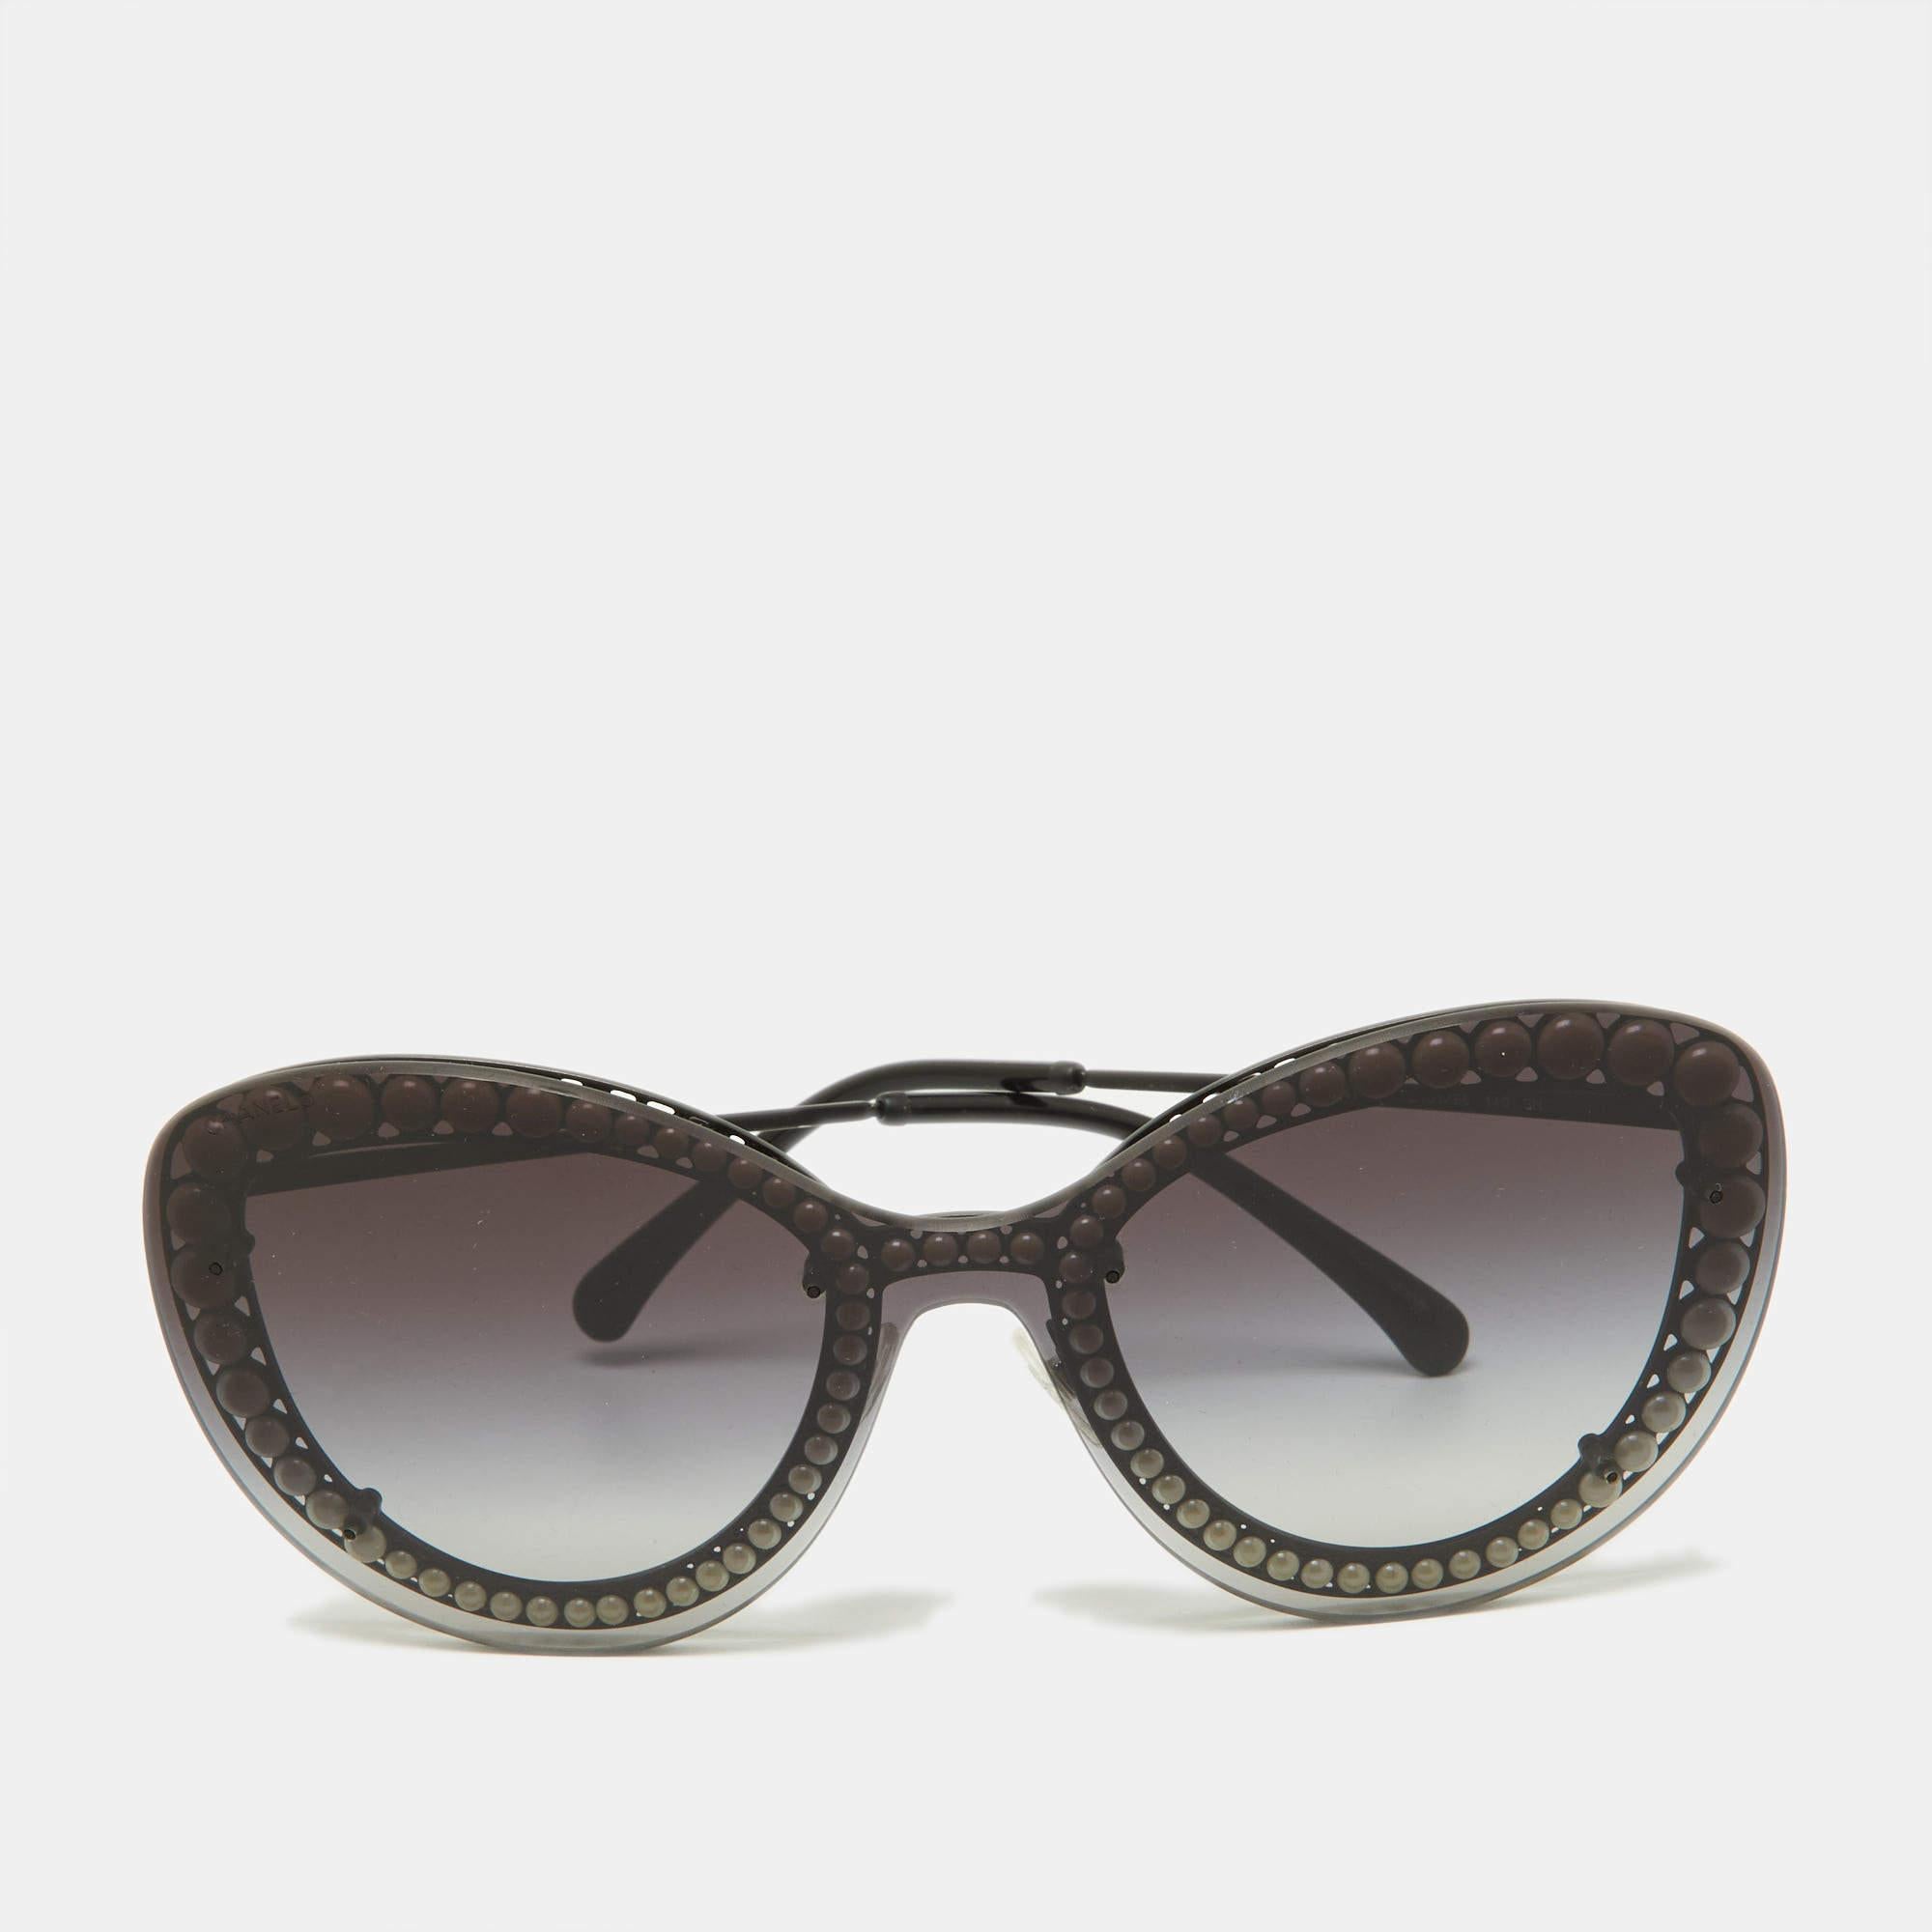 Mit dieser Chanel-Sonnenbrille für Damen können Sie Ihre Augen aufwerten. Sorgfältig aus hochwertigen Materialien gefertigt, bieten sie unvergleichlichen Schutz und ein zeitloses Design, das sie zu einem unverzichtbaren Accessoire für modebewusste